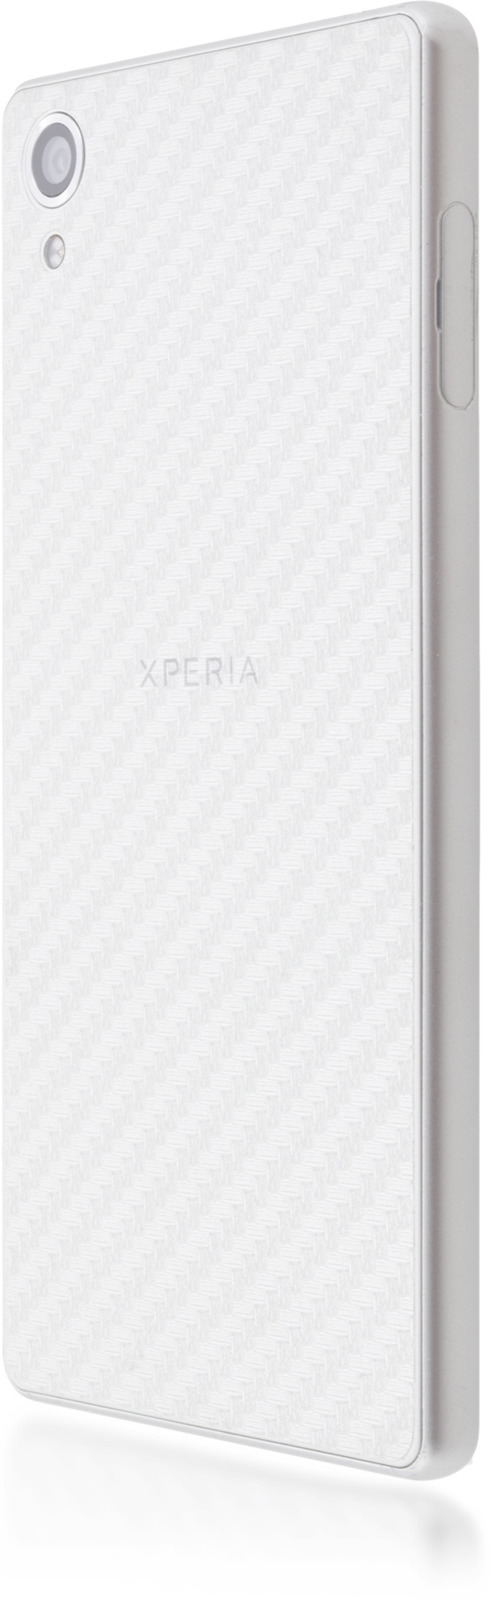 Декоративная пленка Brosco для Sony Xperia X